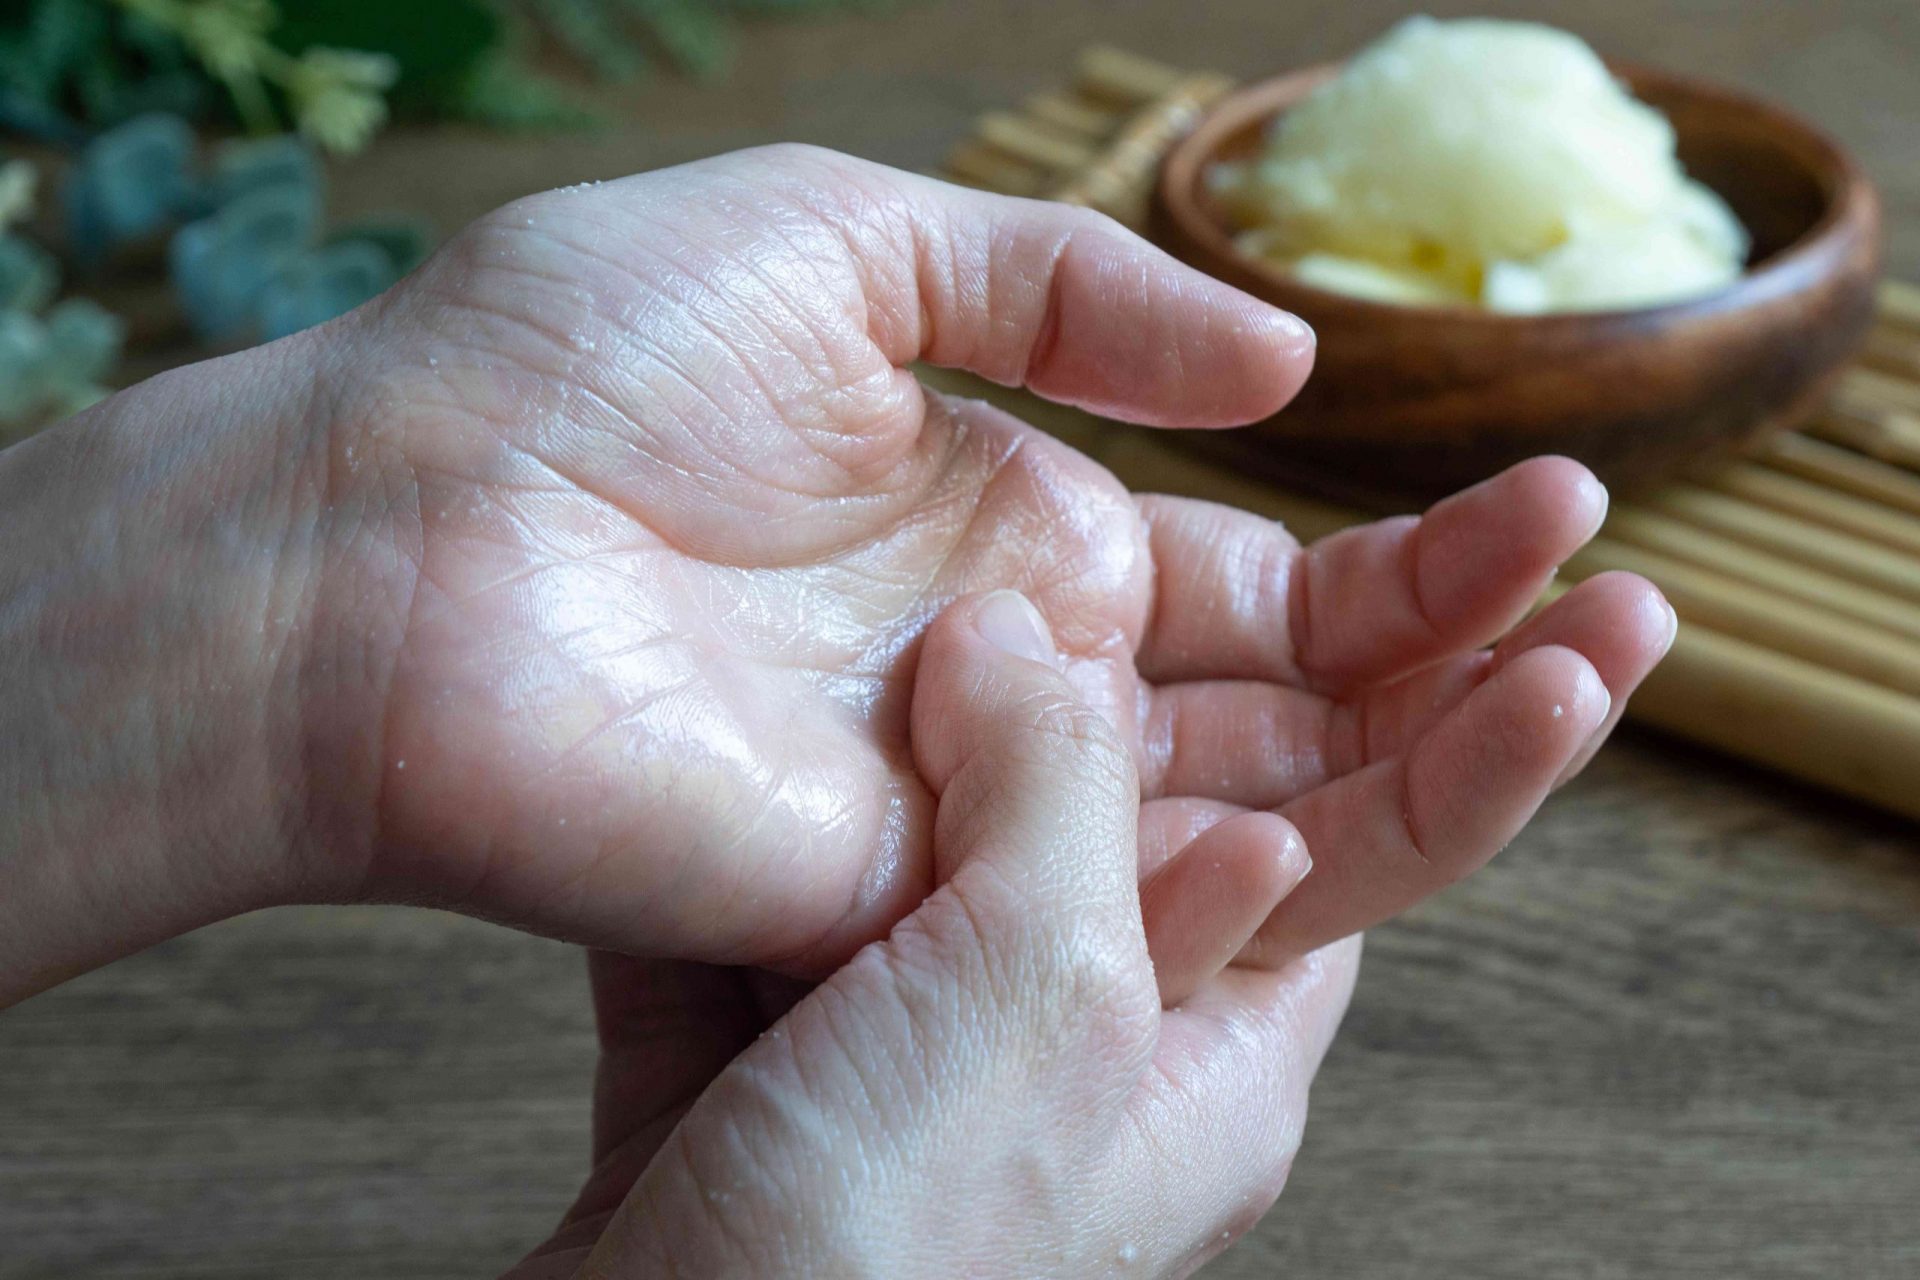 dos manos frotando manteca de karité en la palma de la mano, con un cuenco de madera con manteca de karité cruda de fondo